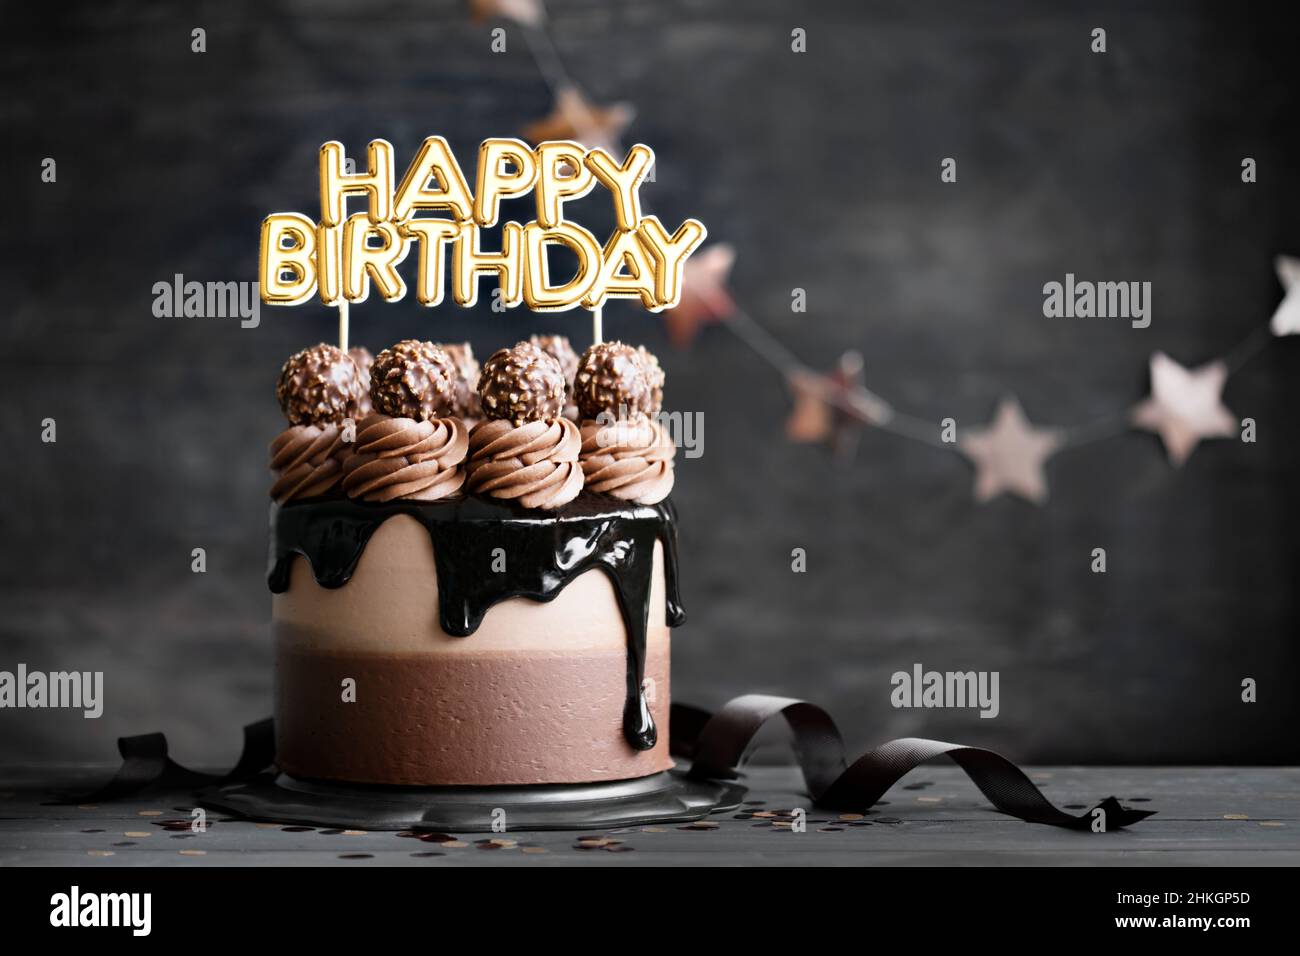 Pastel de cumpleaños de chocolate con gánache de chocolate y guinda de cumpleaños feliz Foto de stock